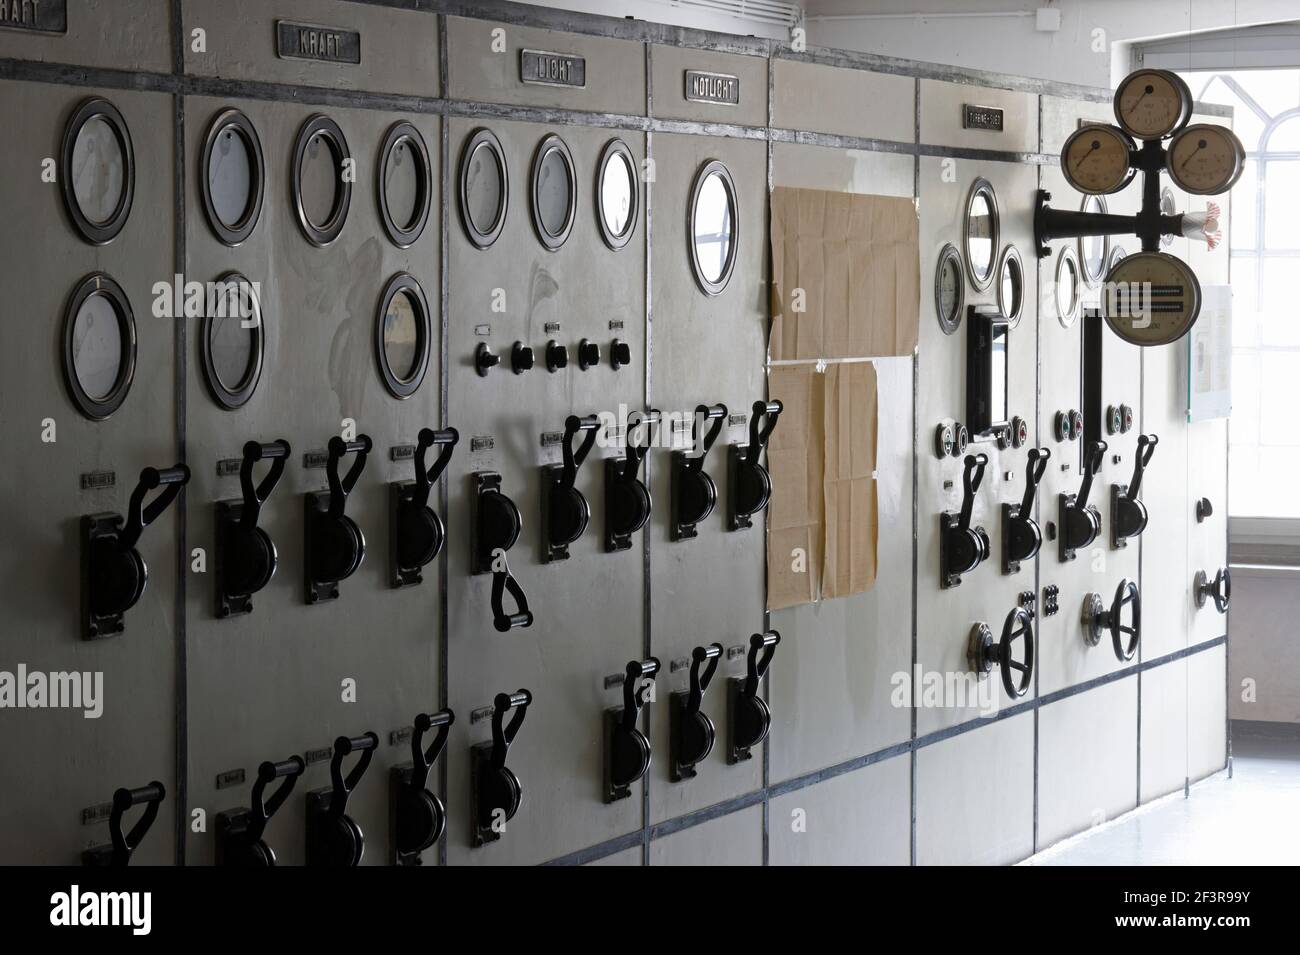 Schalttafel zum Stromabgleich, Engelskirchen, ehemalige Baumwollspinnerei Ermen & Engels, LVR-Industriemuseum Stock Photo